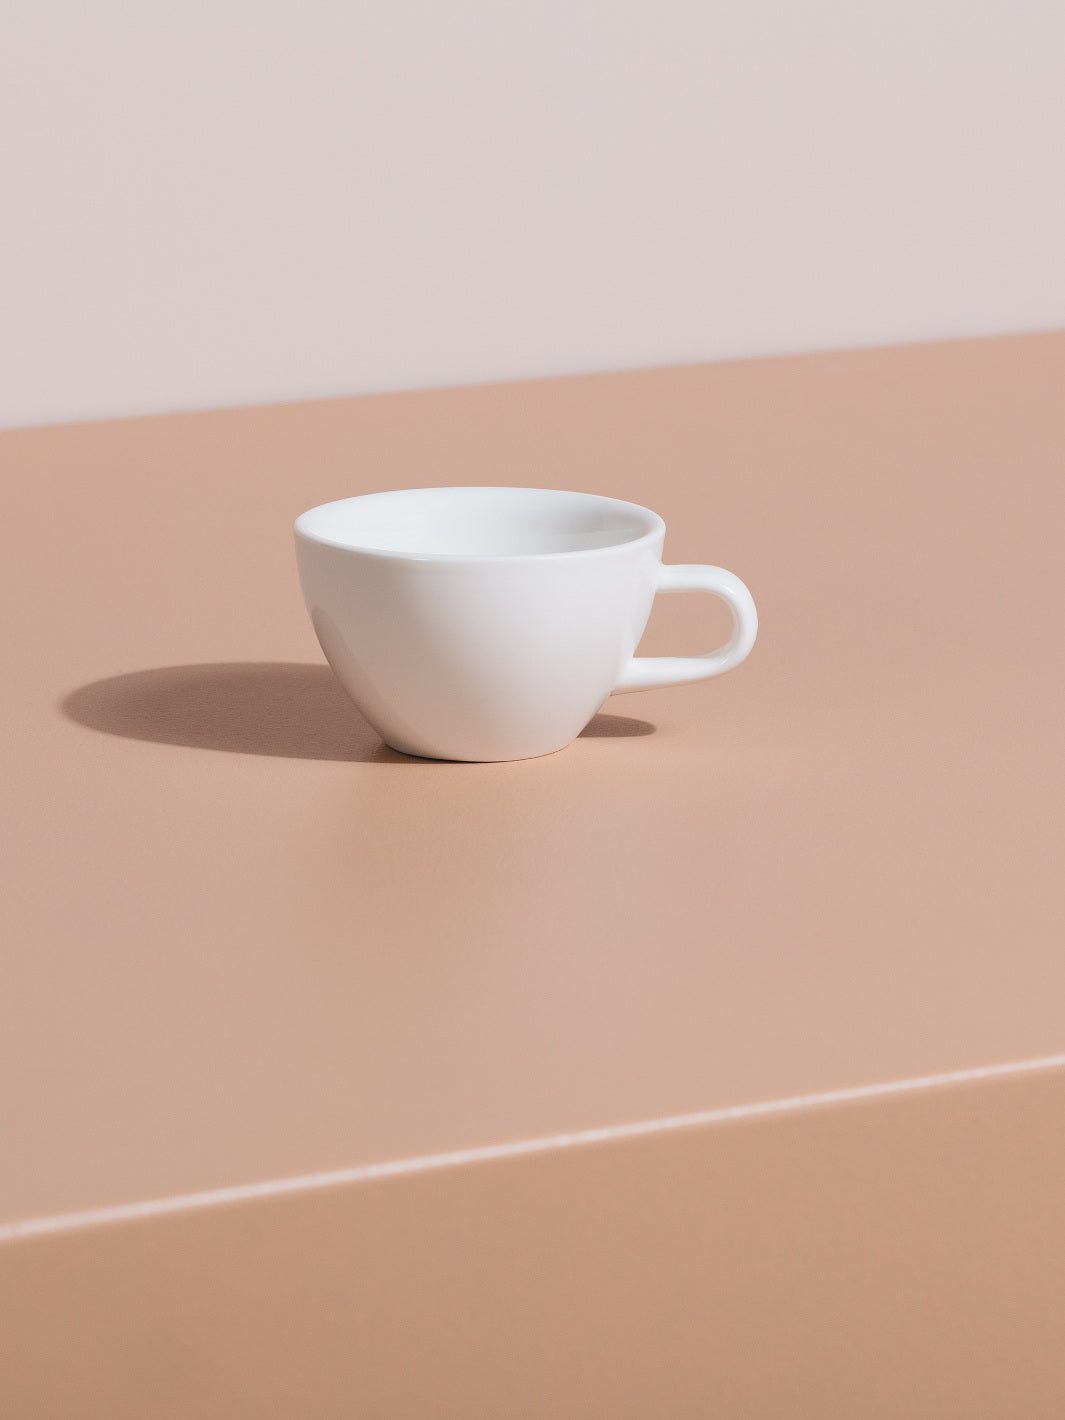 ACME Espresso Cappuccino Cup (190ml/6.43oz)